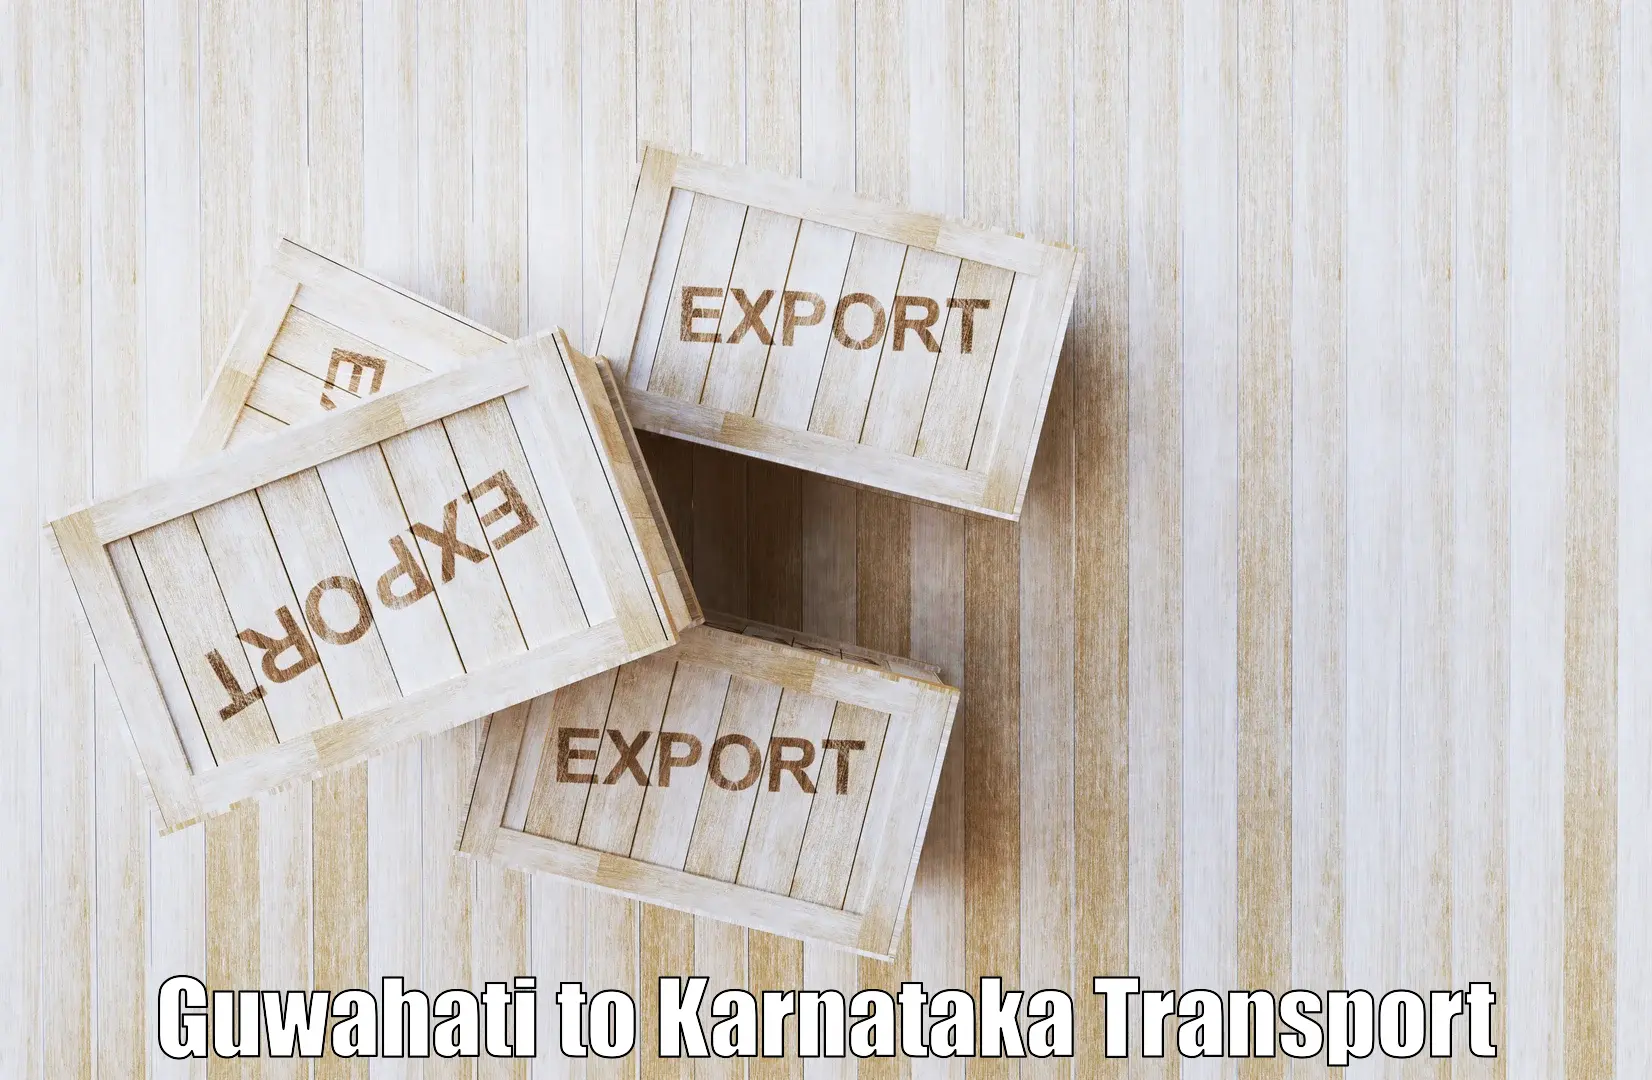 Vehicle parcel service Guwahati to Kanjarakatte